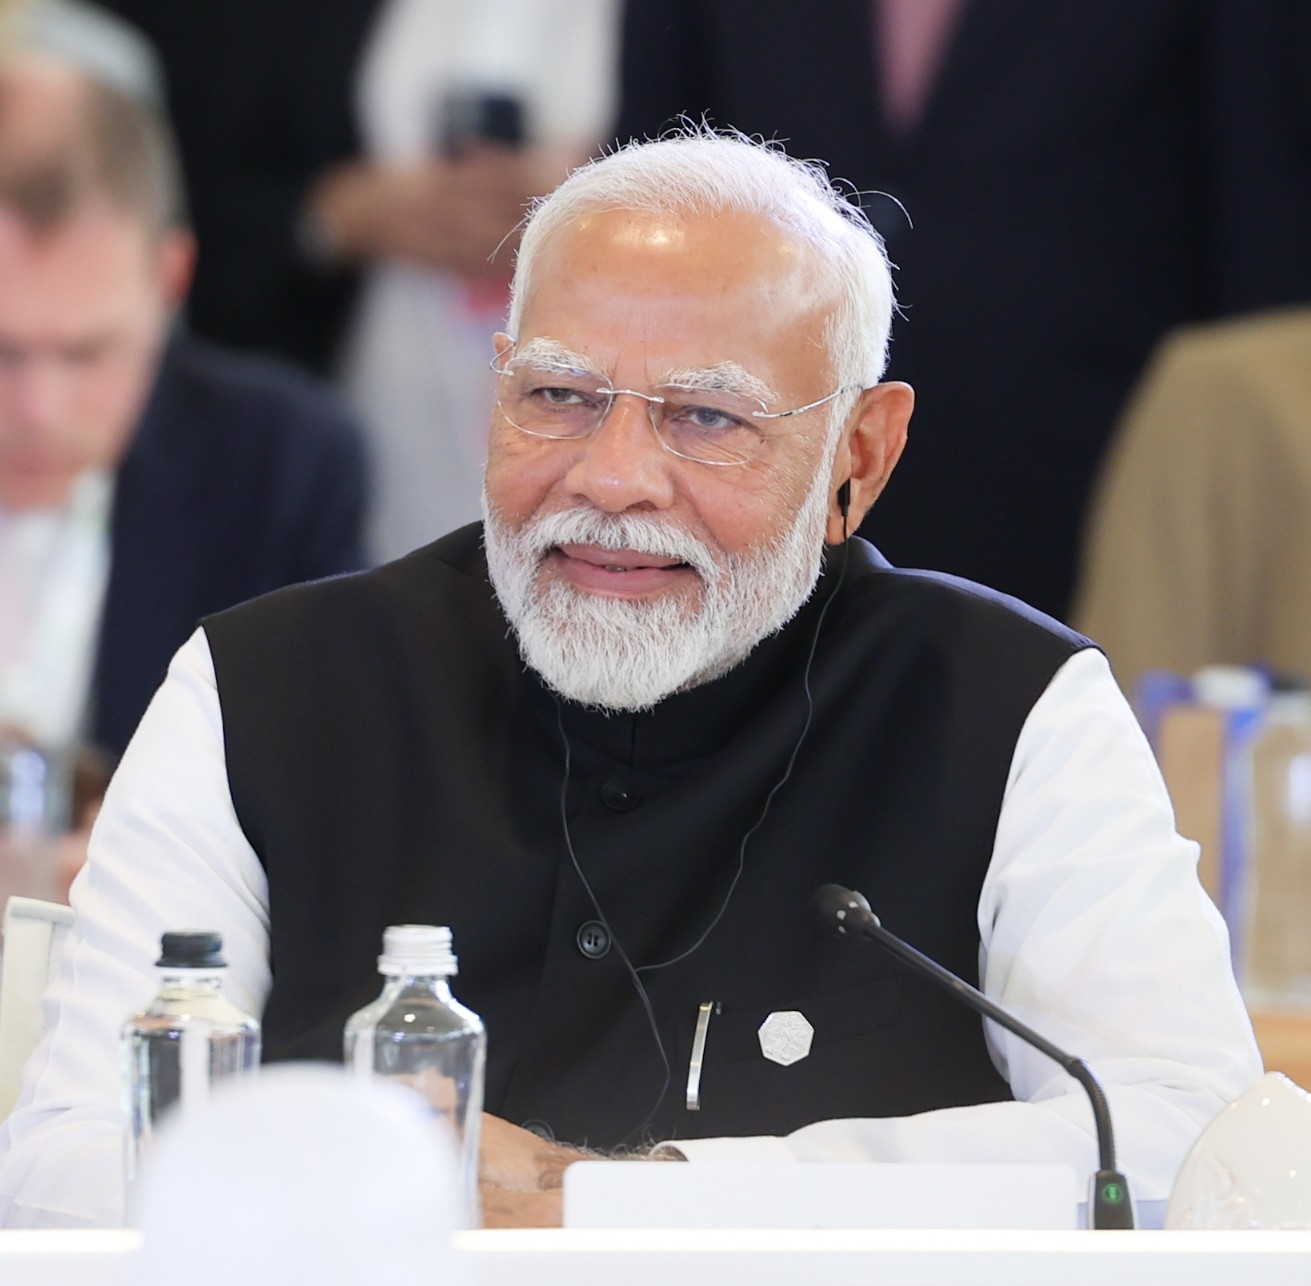 जी7 शिखर सम्मेलन: प्रधानमंत्री मोदी ने प्रौद्योगिकी के क्षेत्र में एकाधिकार समाप्त करने की वकालत की